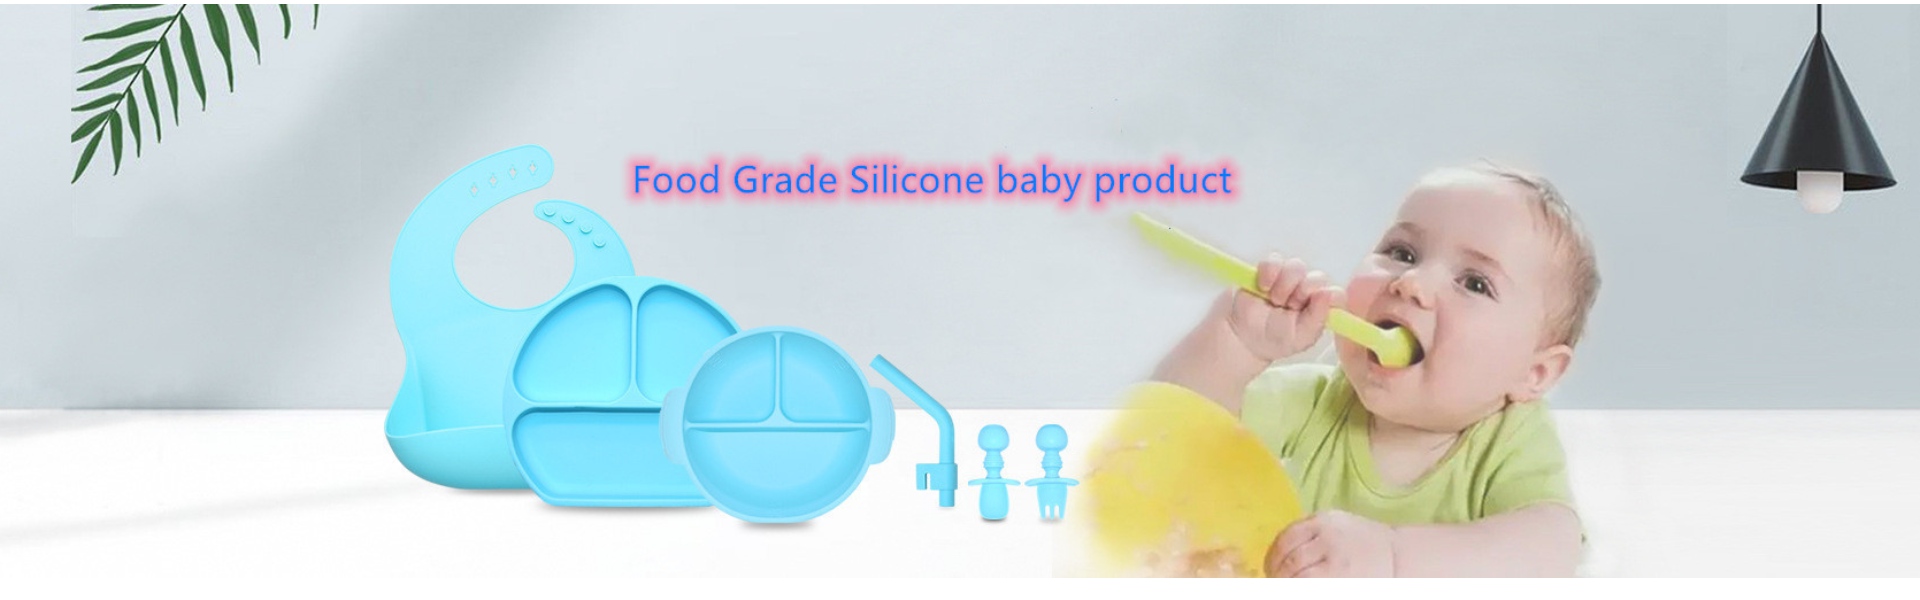 Utensílios de Cozinha de silício, bolor de Gelo de silício, produtos lácteos de silício,Huizhou Calipolo accessory Ltd